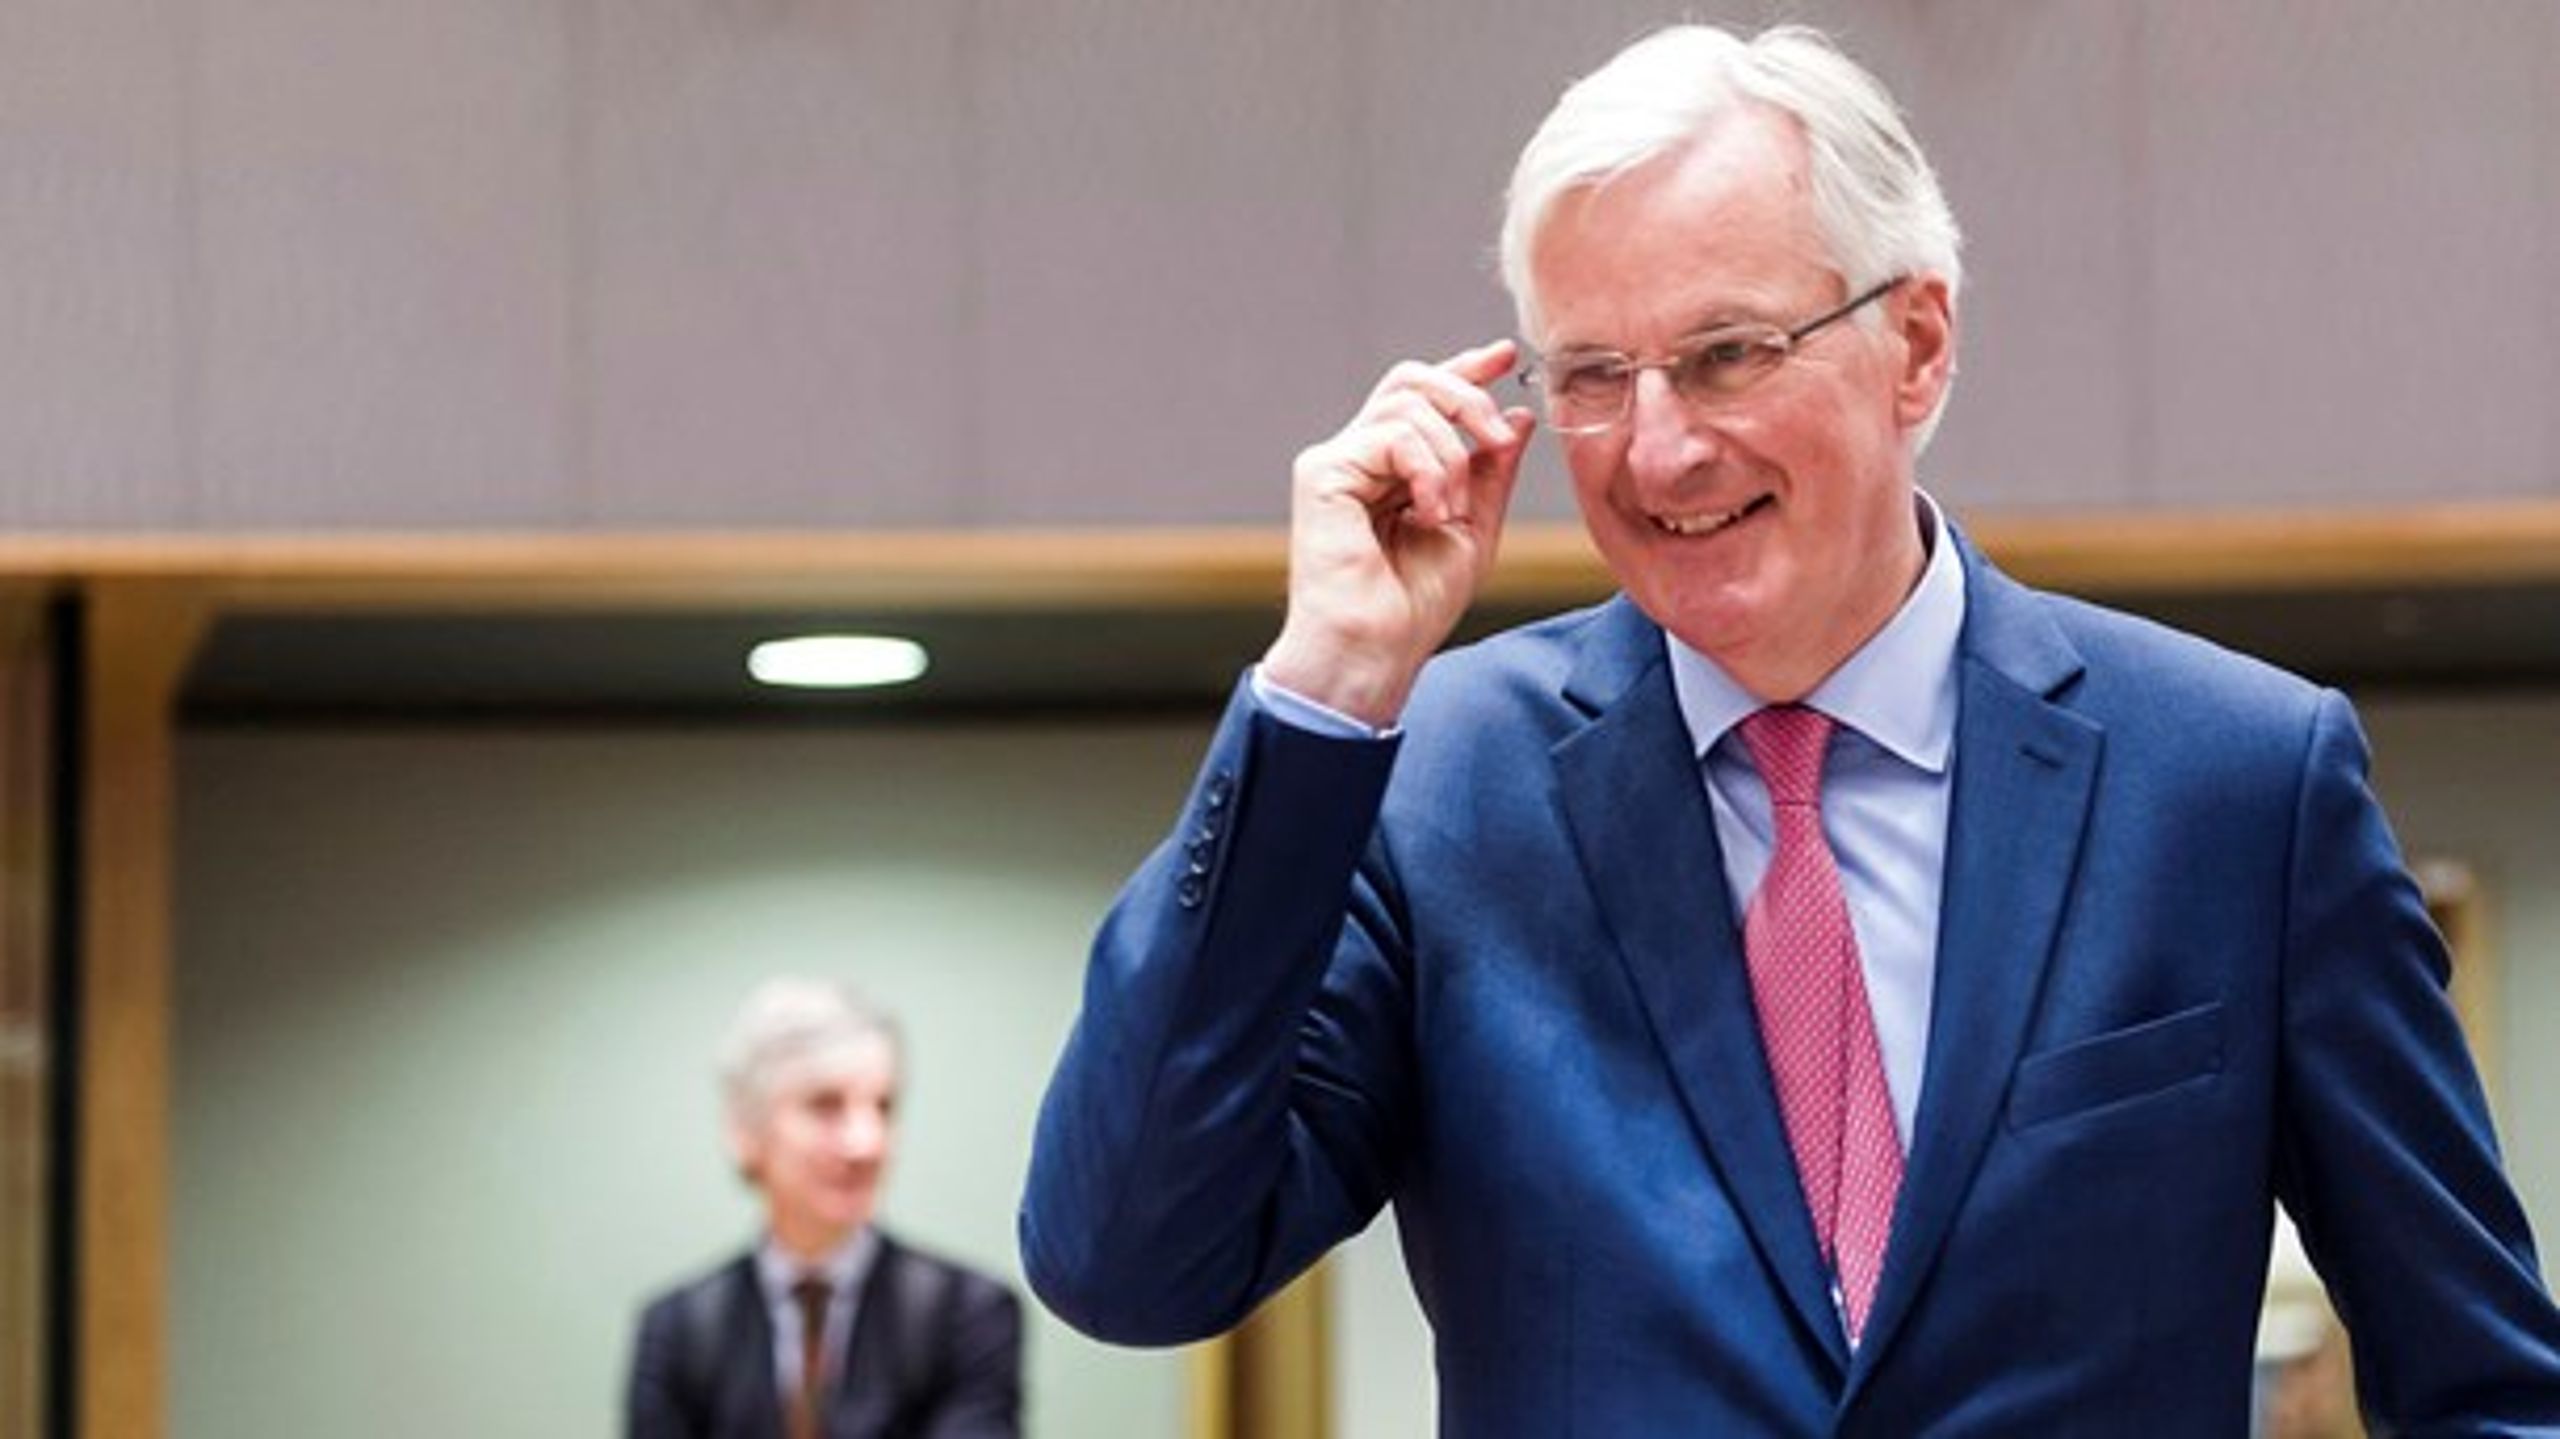 Bolden ligger på briternes banehalvdel, lyder det fra EU's chefforhandler, Michel Barnier, efter EU-landene mandag vedtog deres forhandlingsmandat for en overgangsordning mellem parterne, der vil lade briterne forblive under EU's regler til udgangen af 2020.